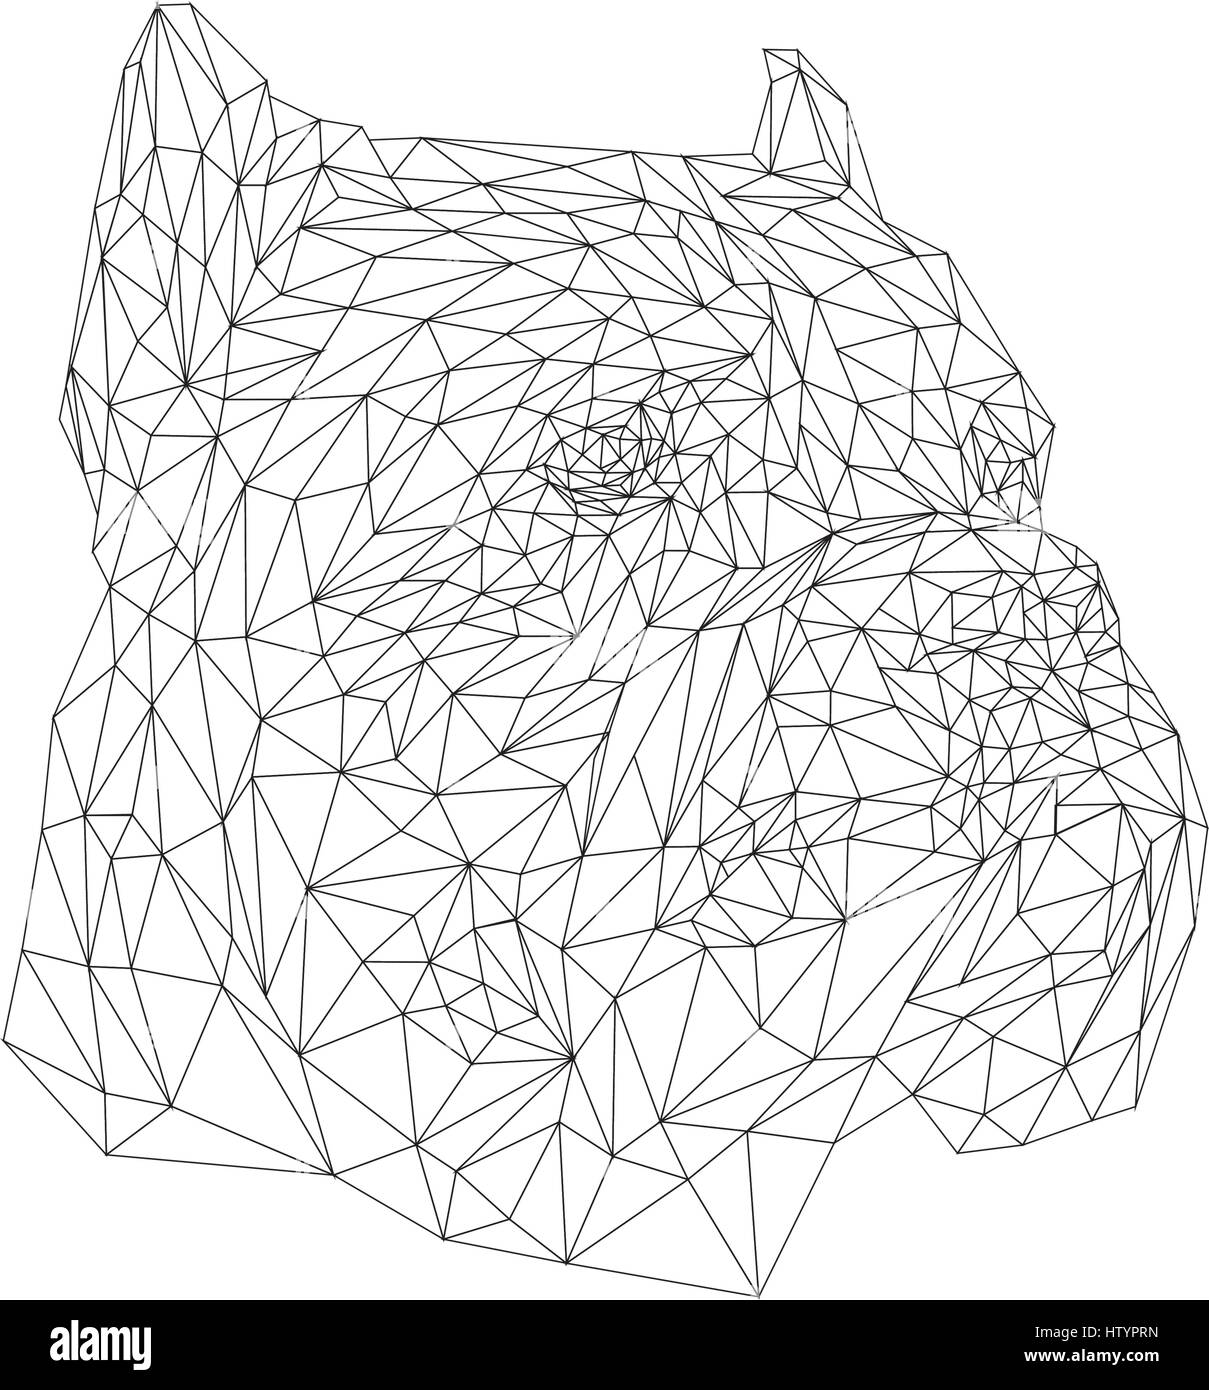 Cane Corso faible animal conception poly. Illustration vecteur de triangle. Illustration de Vecteur